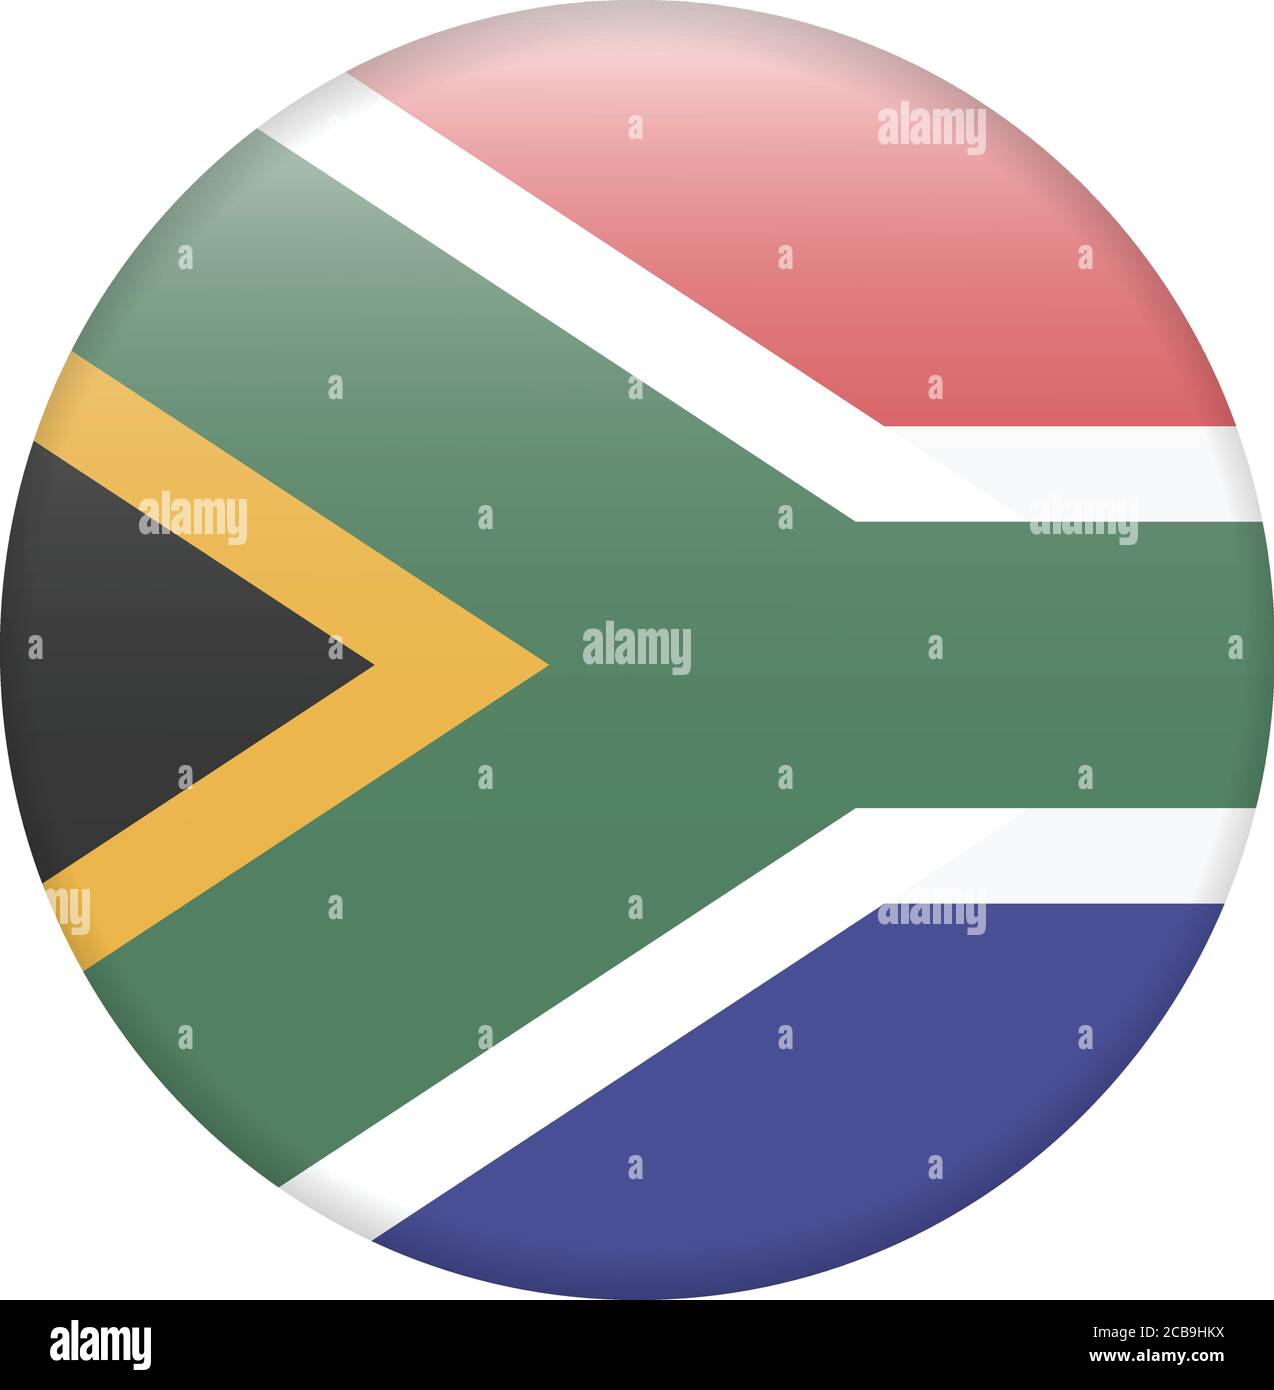 Drapeau précis de l'Afrique du Sud en termes de couleurs, de taille, de proportion et de placement des éléments Illustration de Vecteur